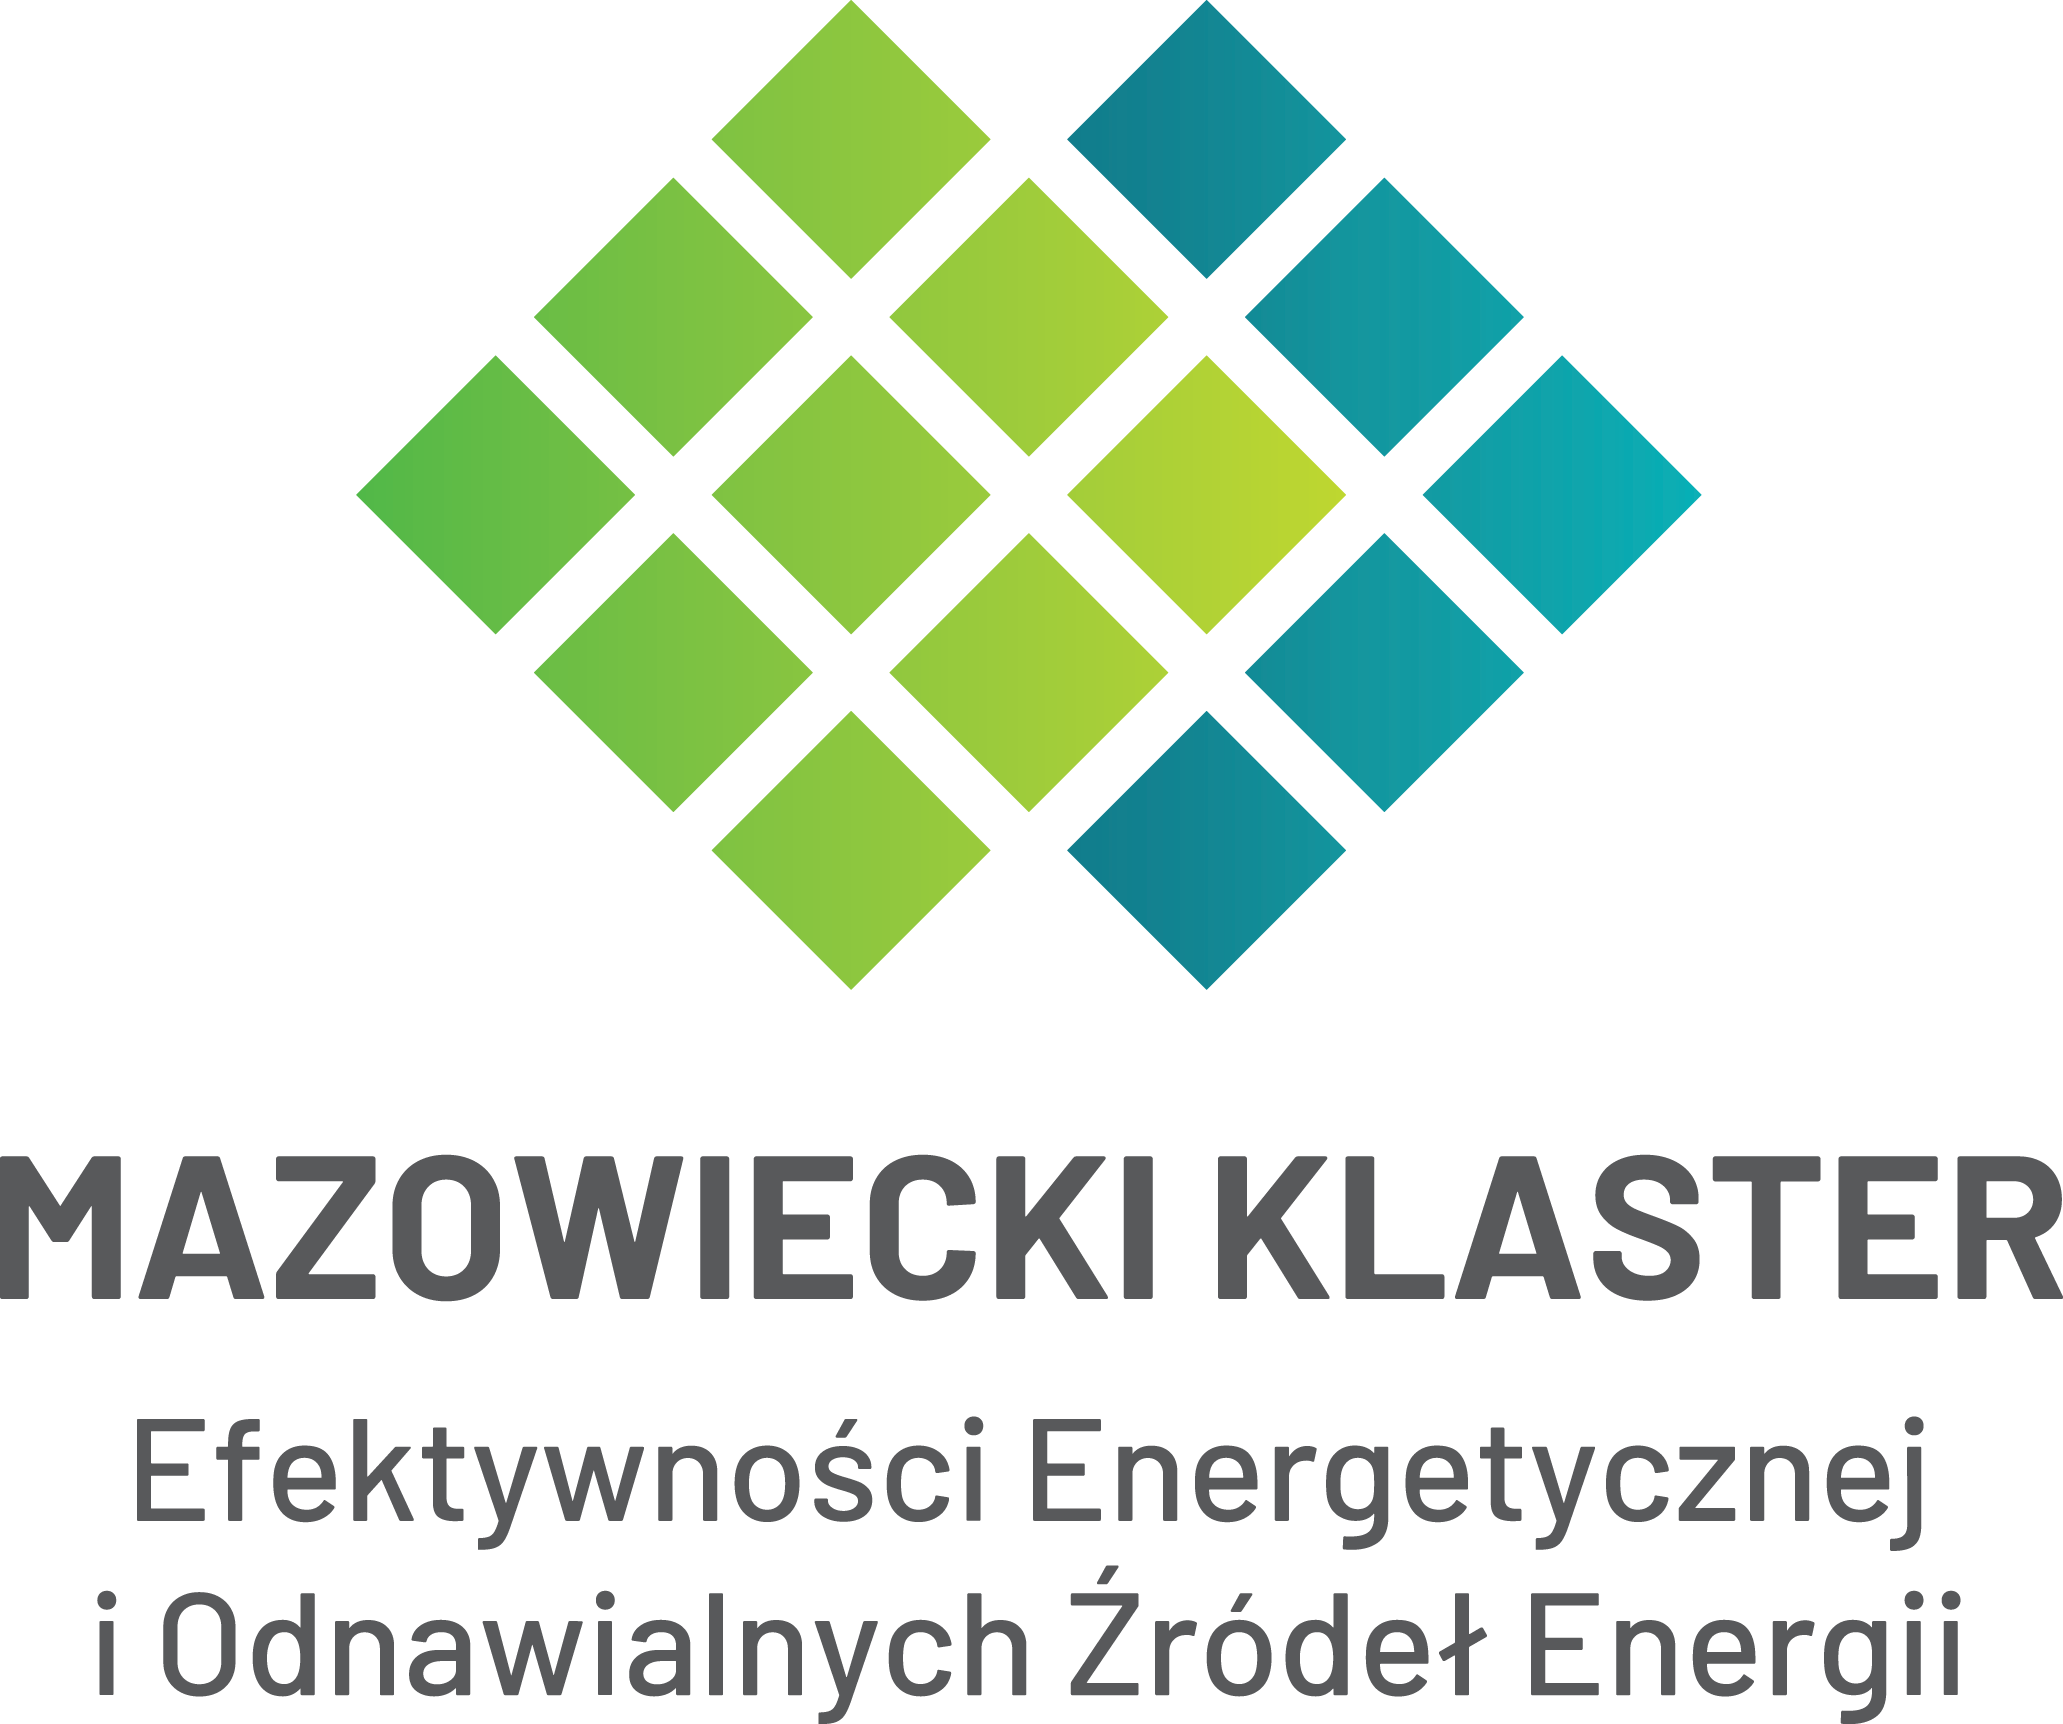 Mazowiecki Klaster Efektywności Energetycznej i OZE